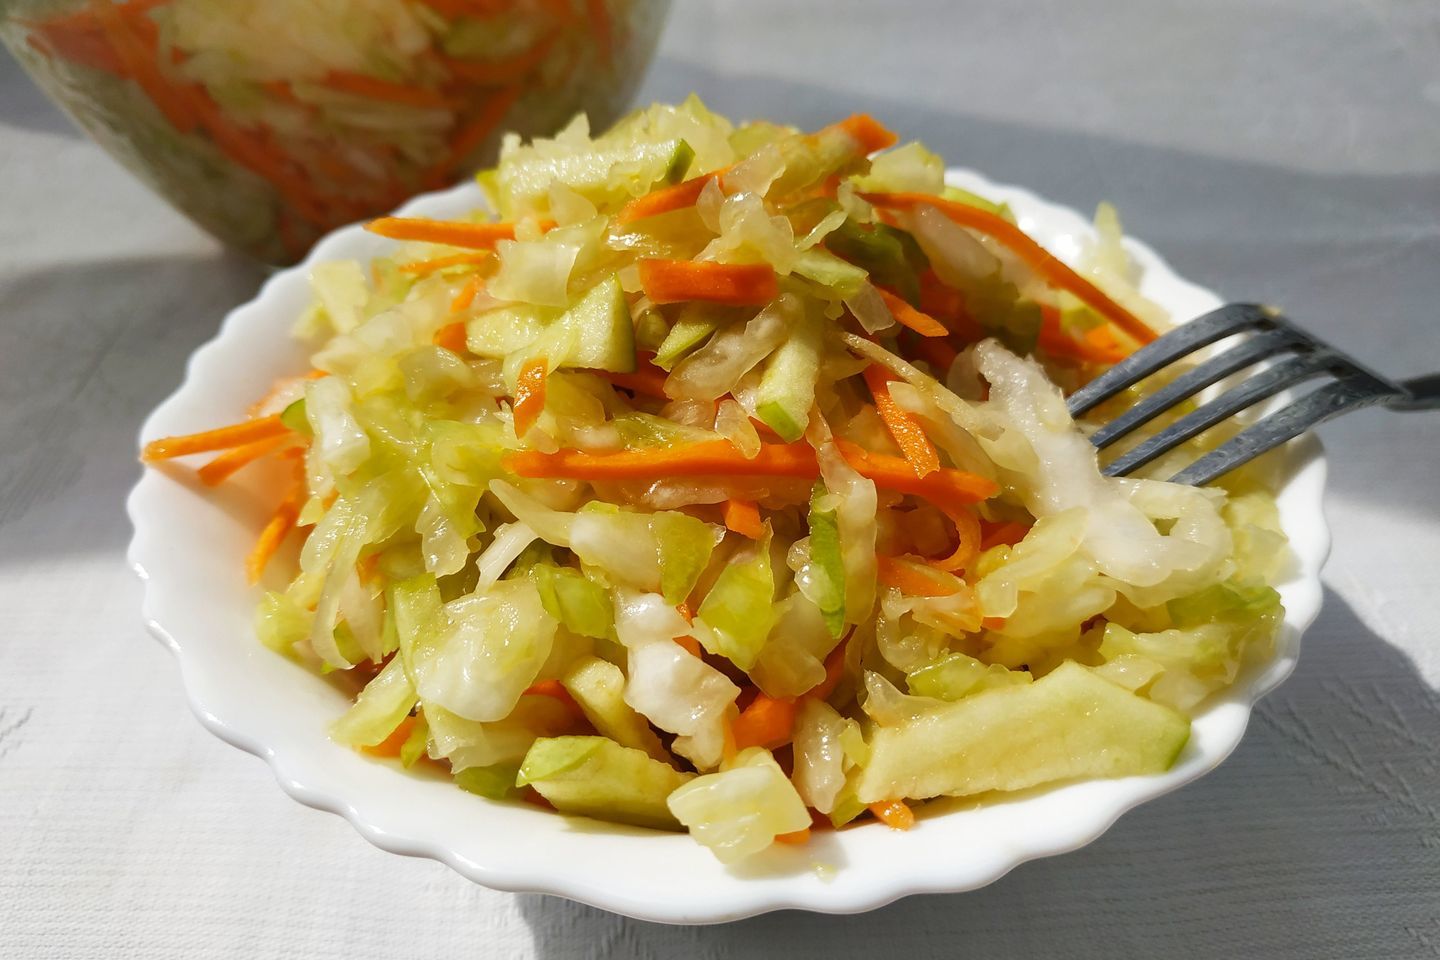 Салат Витаминный из свежей капусты с морковью - калорийность, состав, описание - баштрен.рф